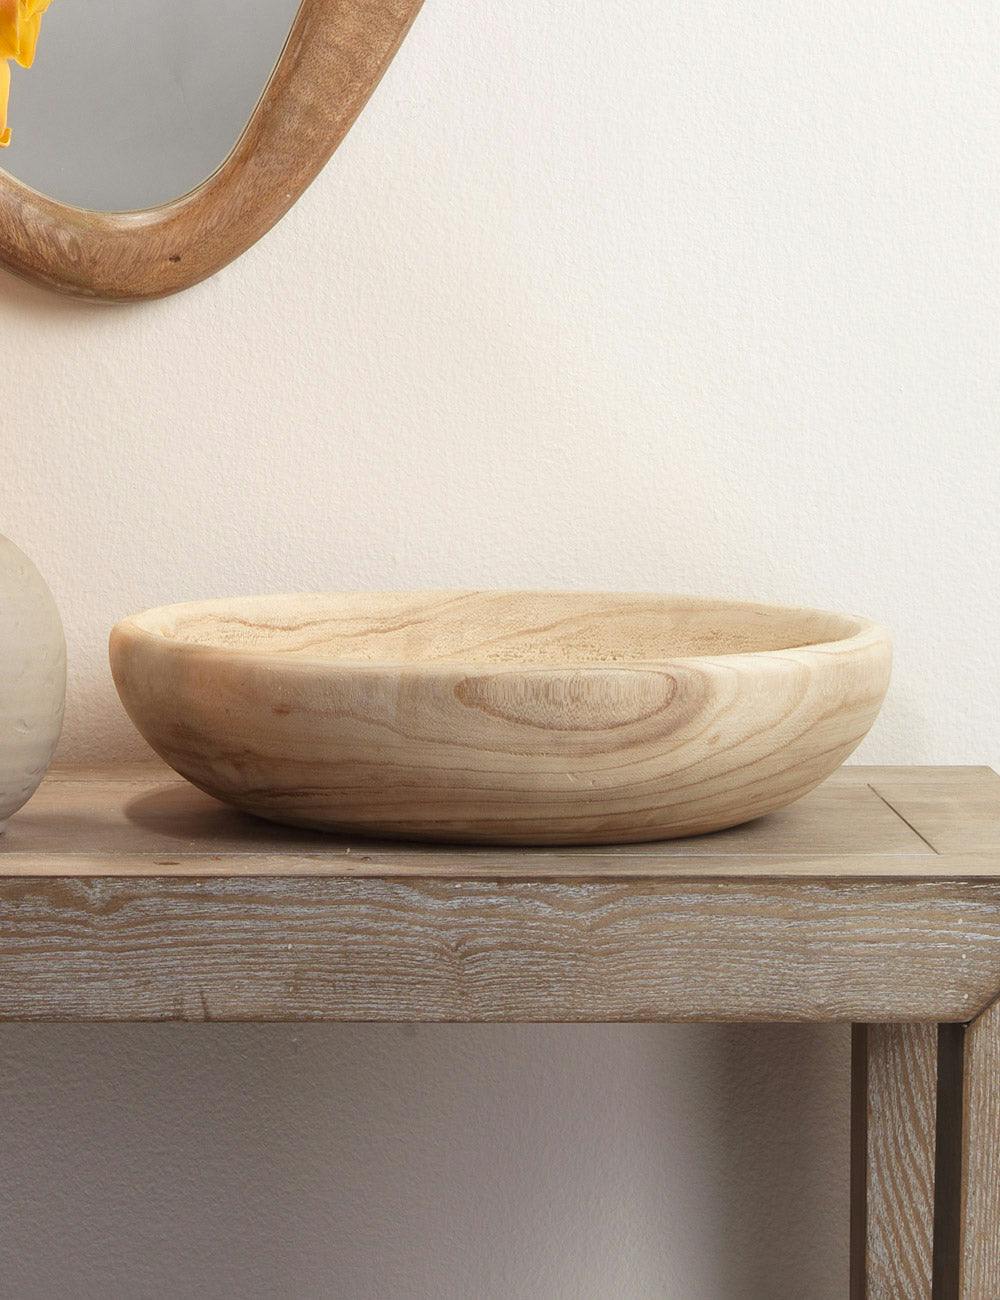 Sada Wooden Bowl - Small